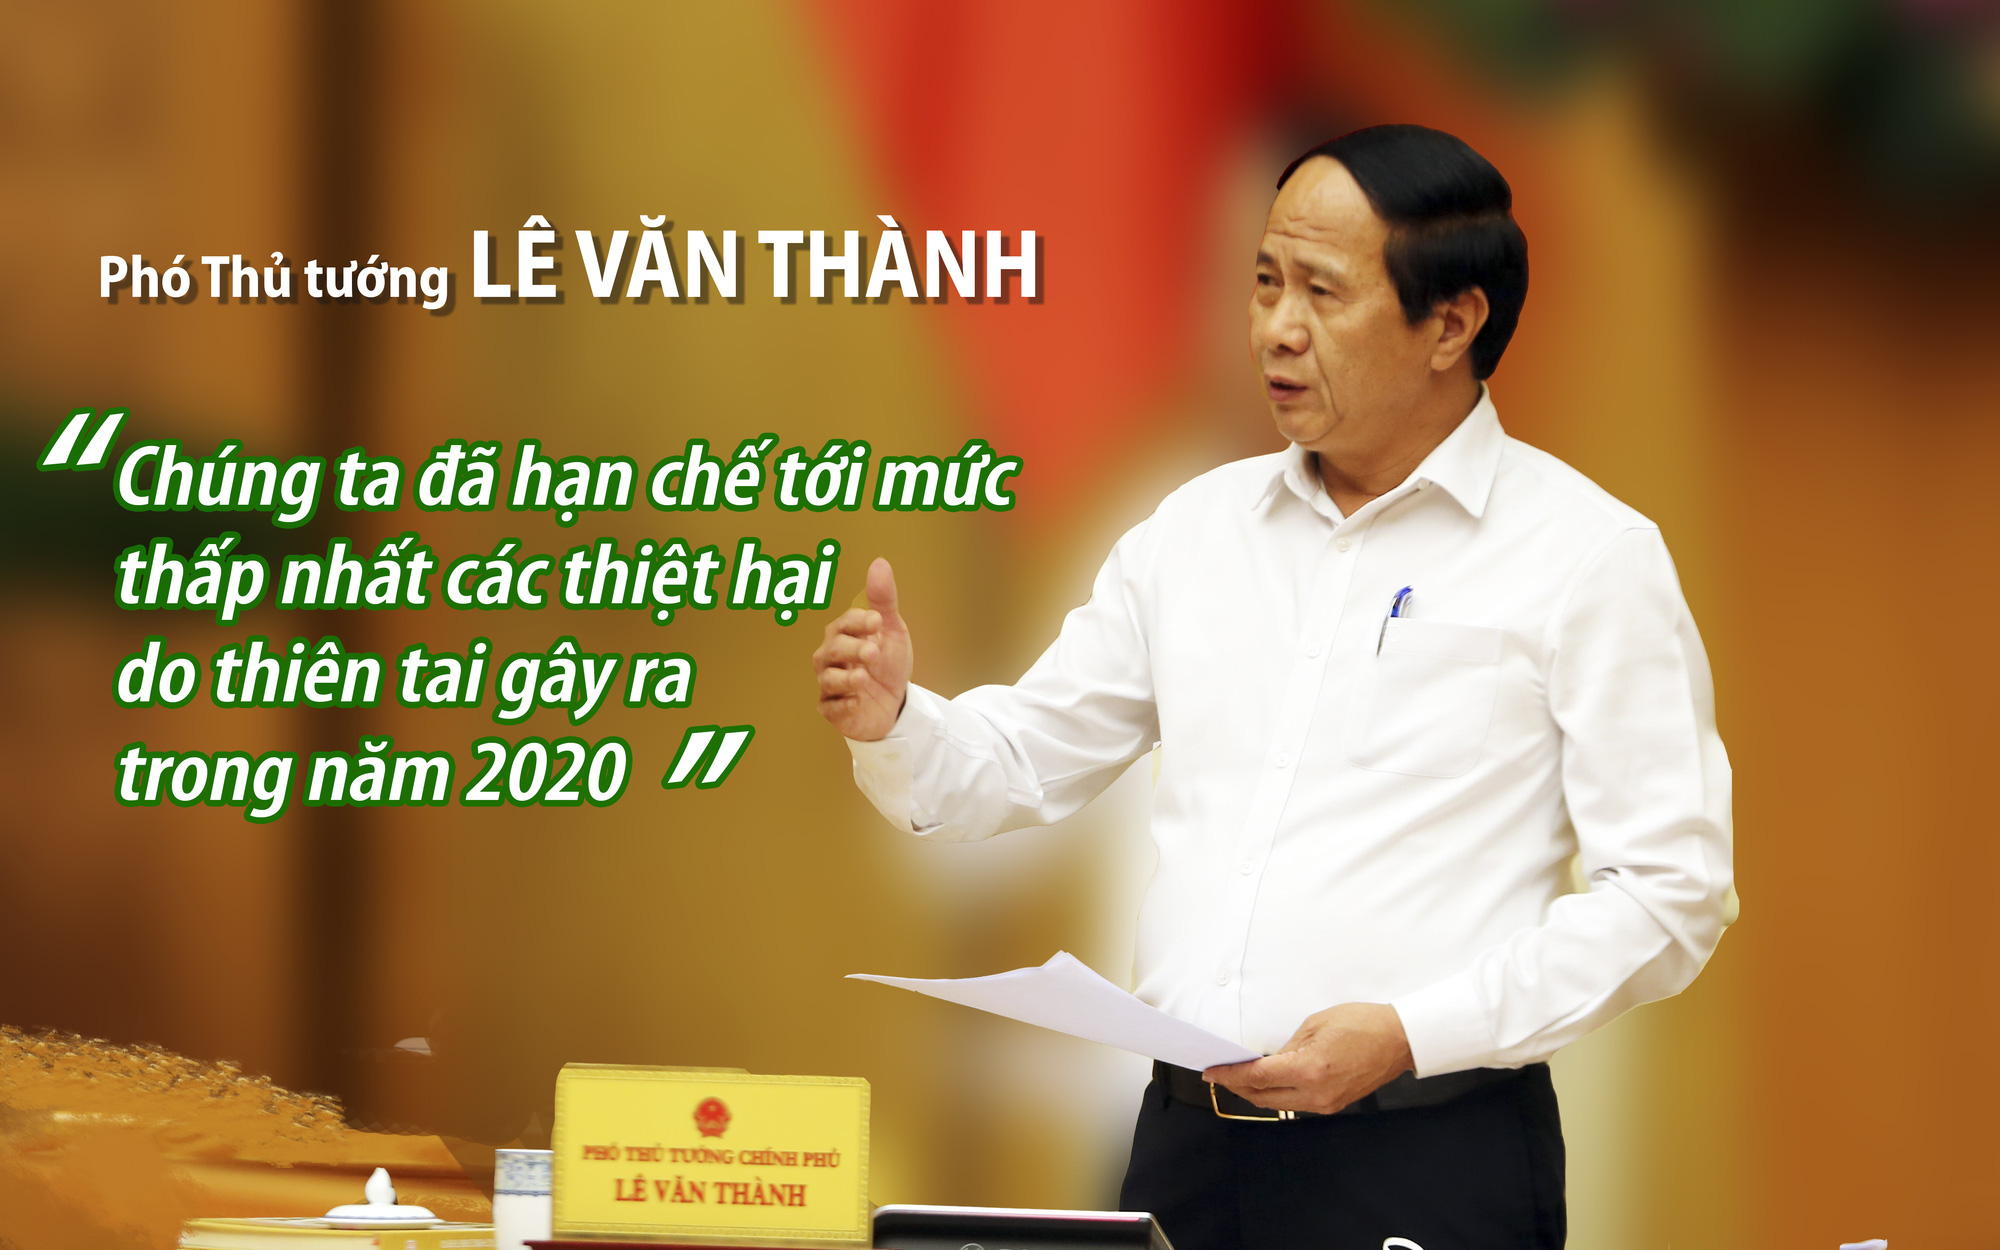 Phó Thủ tướng Lê Văn Thành: Chúng ta đã hạn chế tới mức thấp nhất các thiệt hại do thiên tai gây ra 